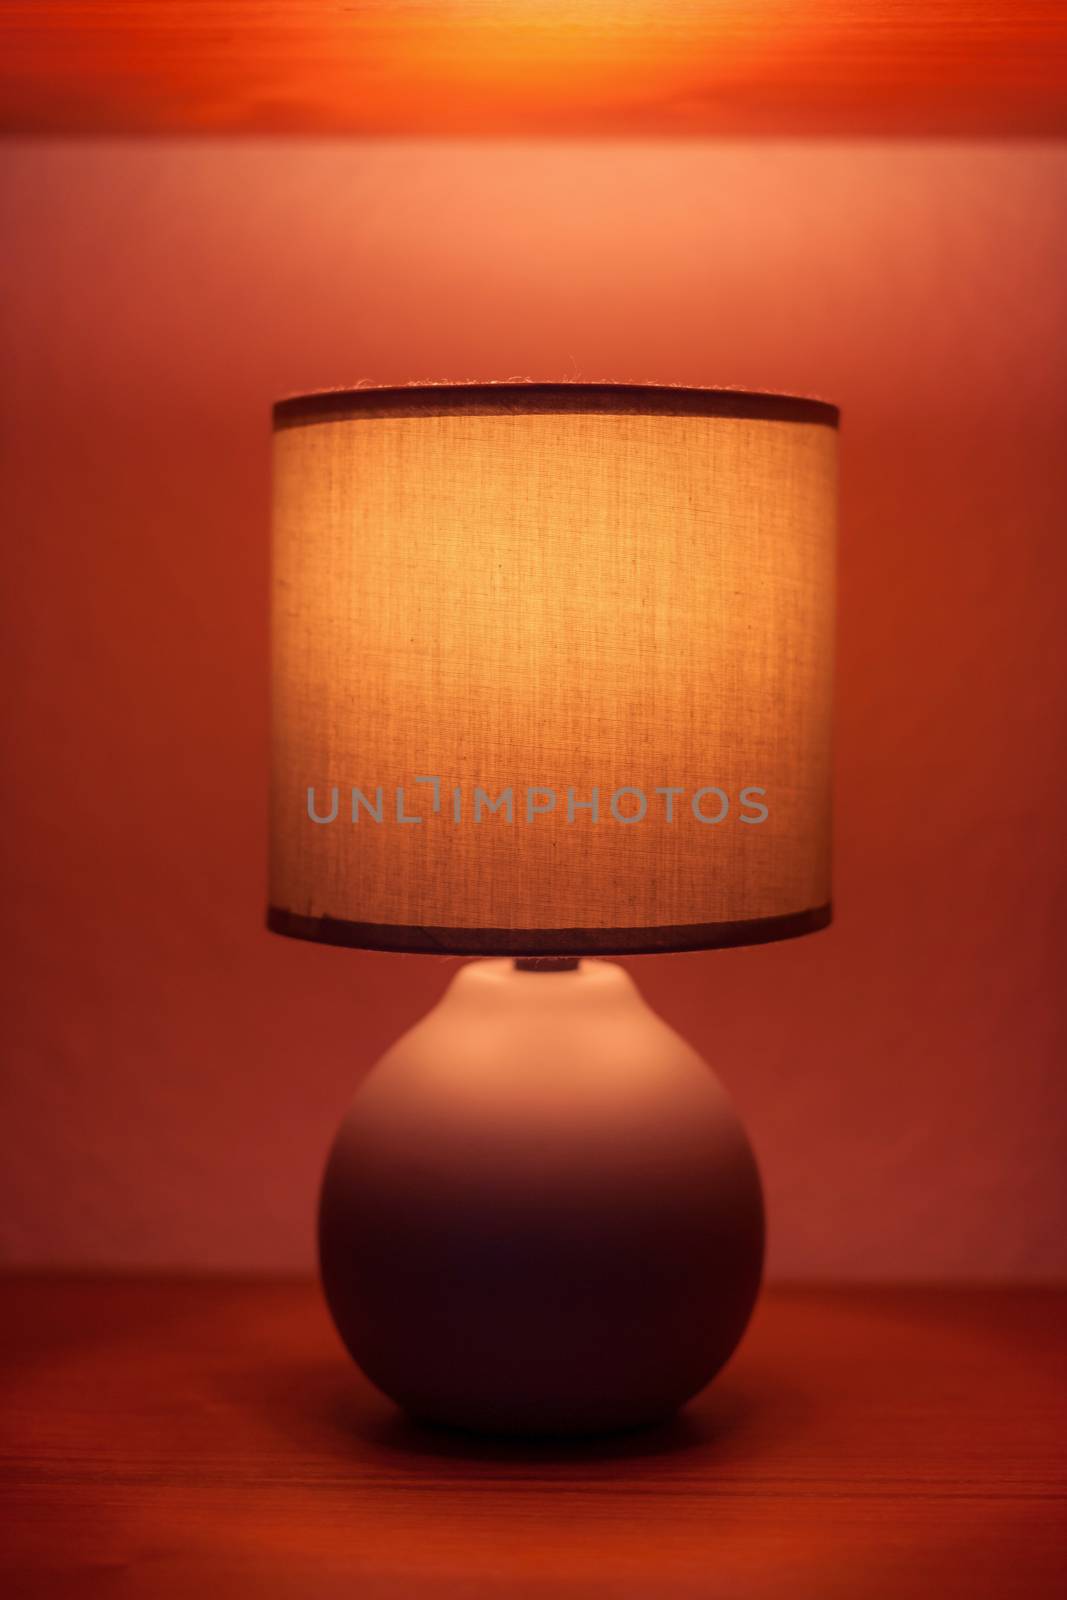 Lit lamp on a shelf in moody light